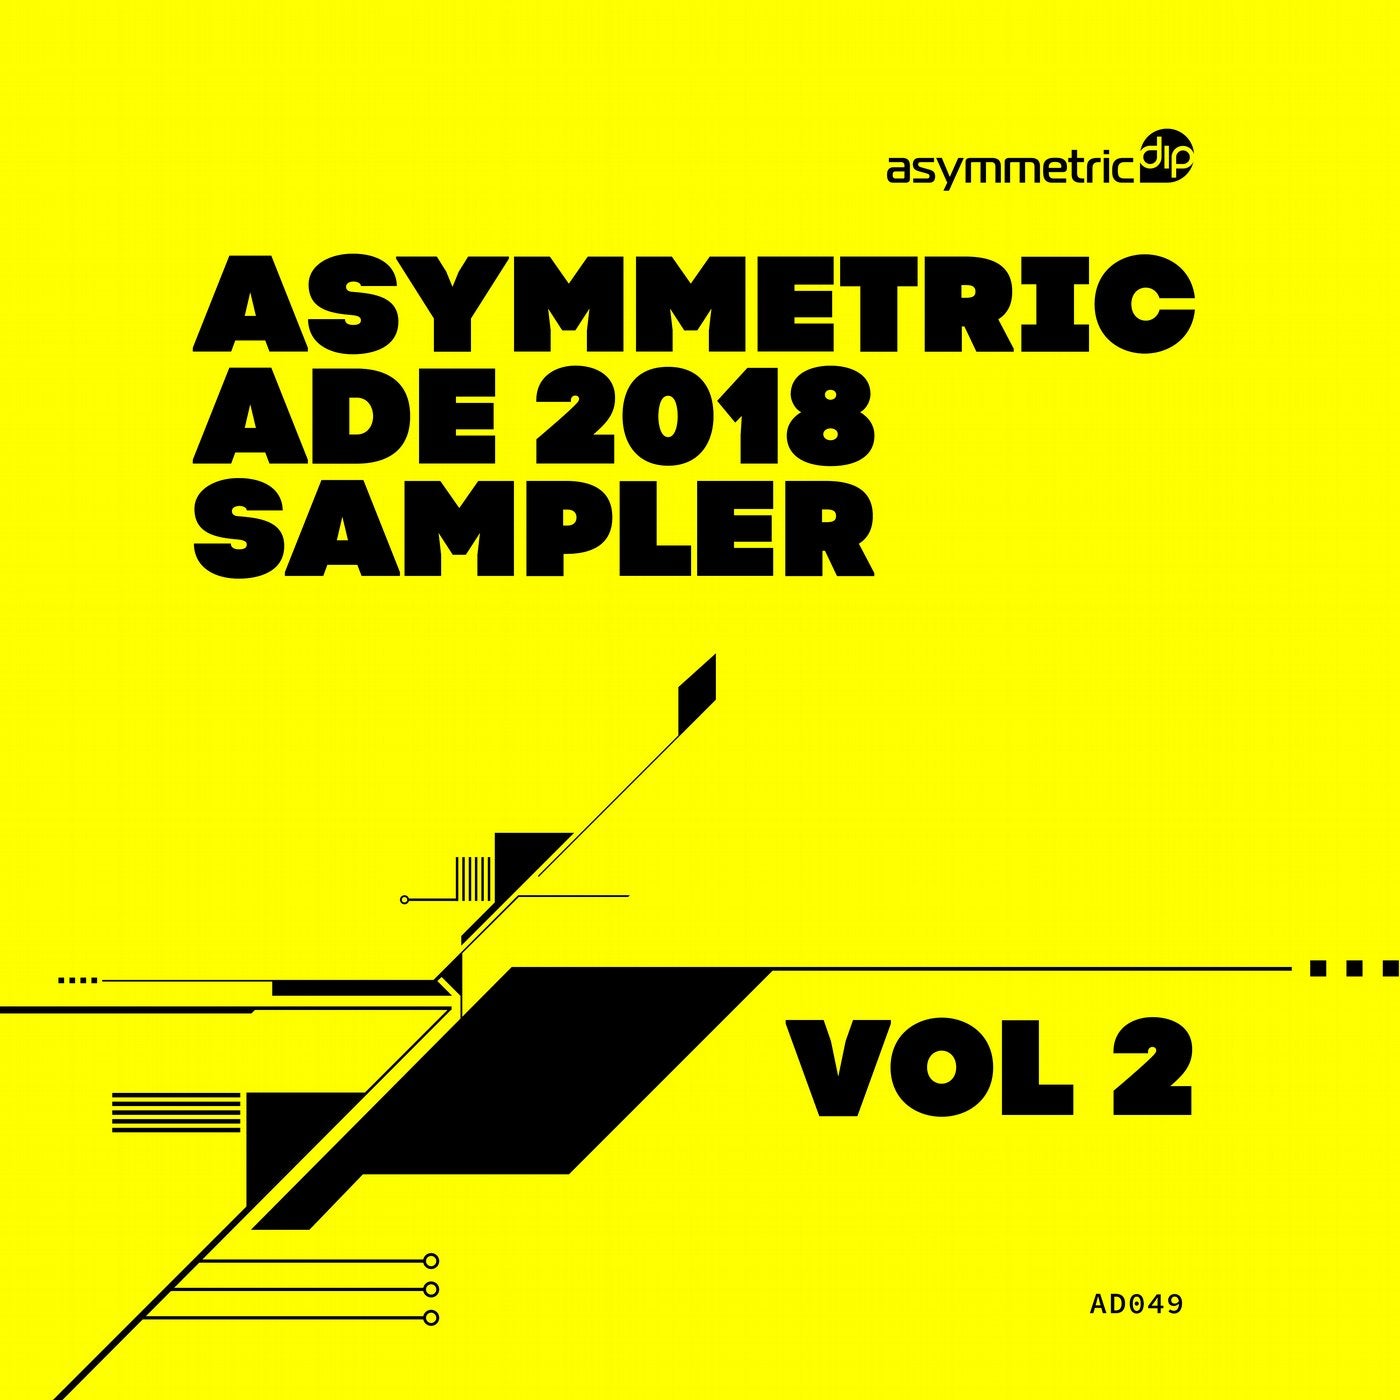 Asymmetric ADE 2018 Sampler Vol 2